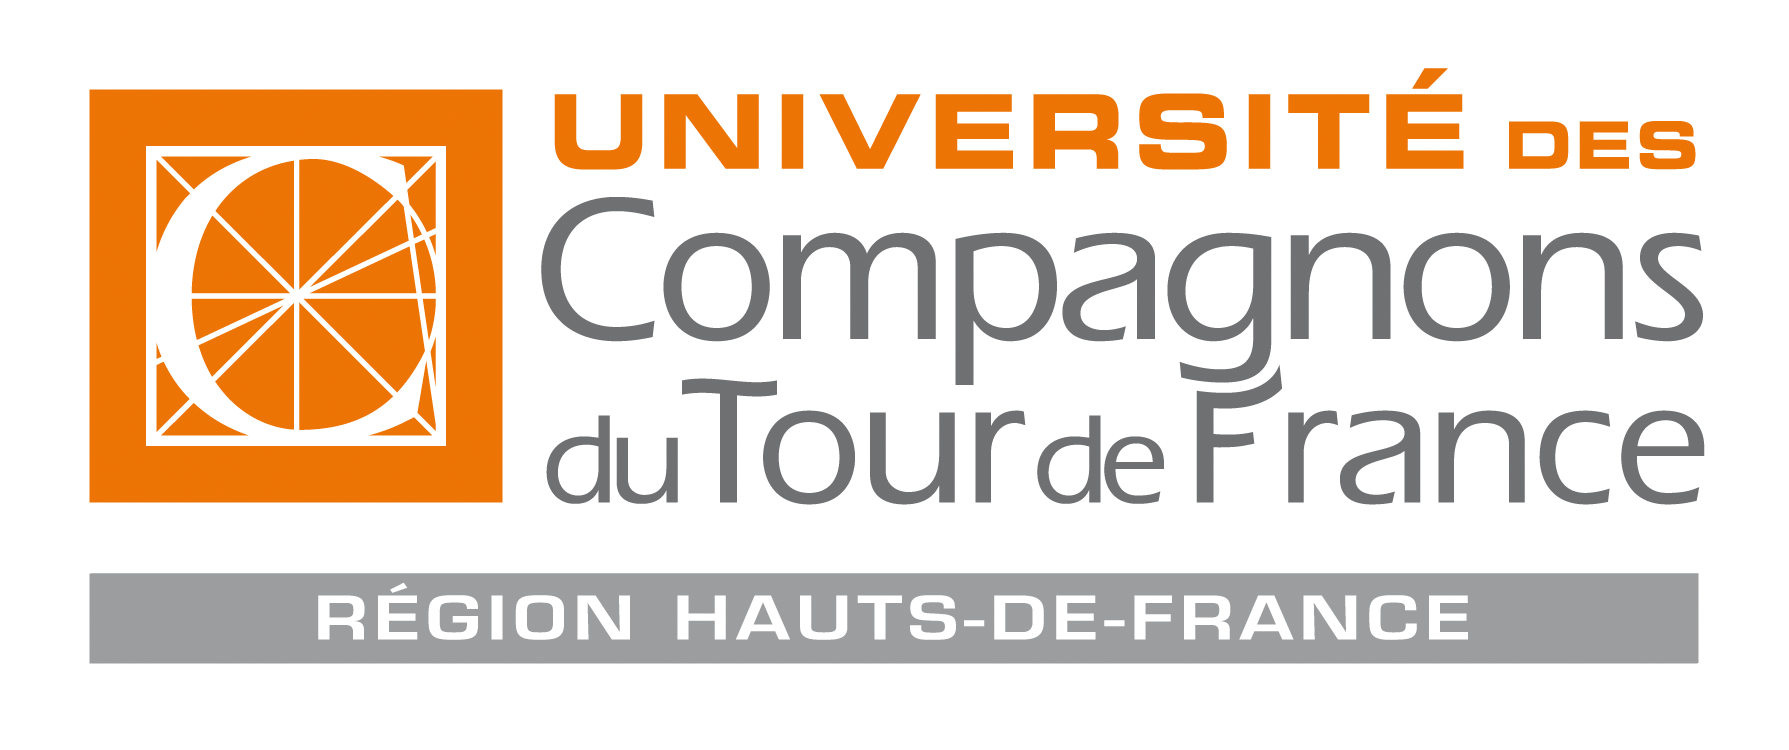 UNIVERSITÉ DES COMPAGNONS HAUTS-DE-FRANCE